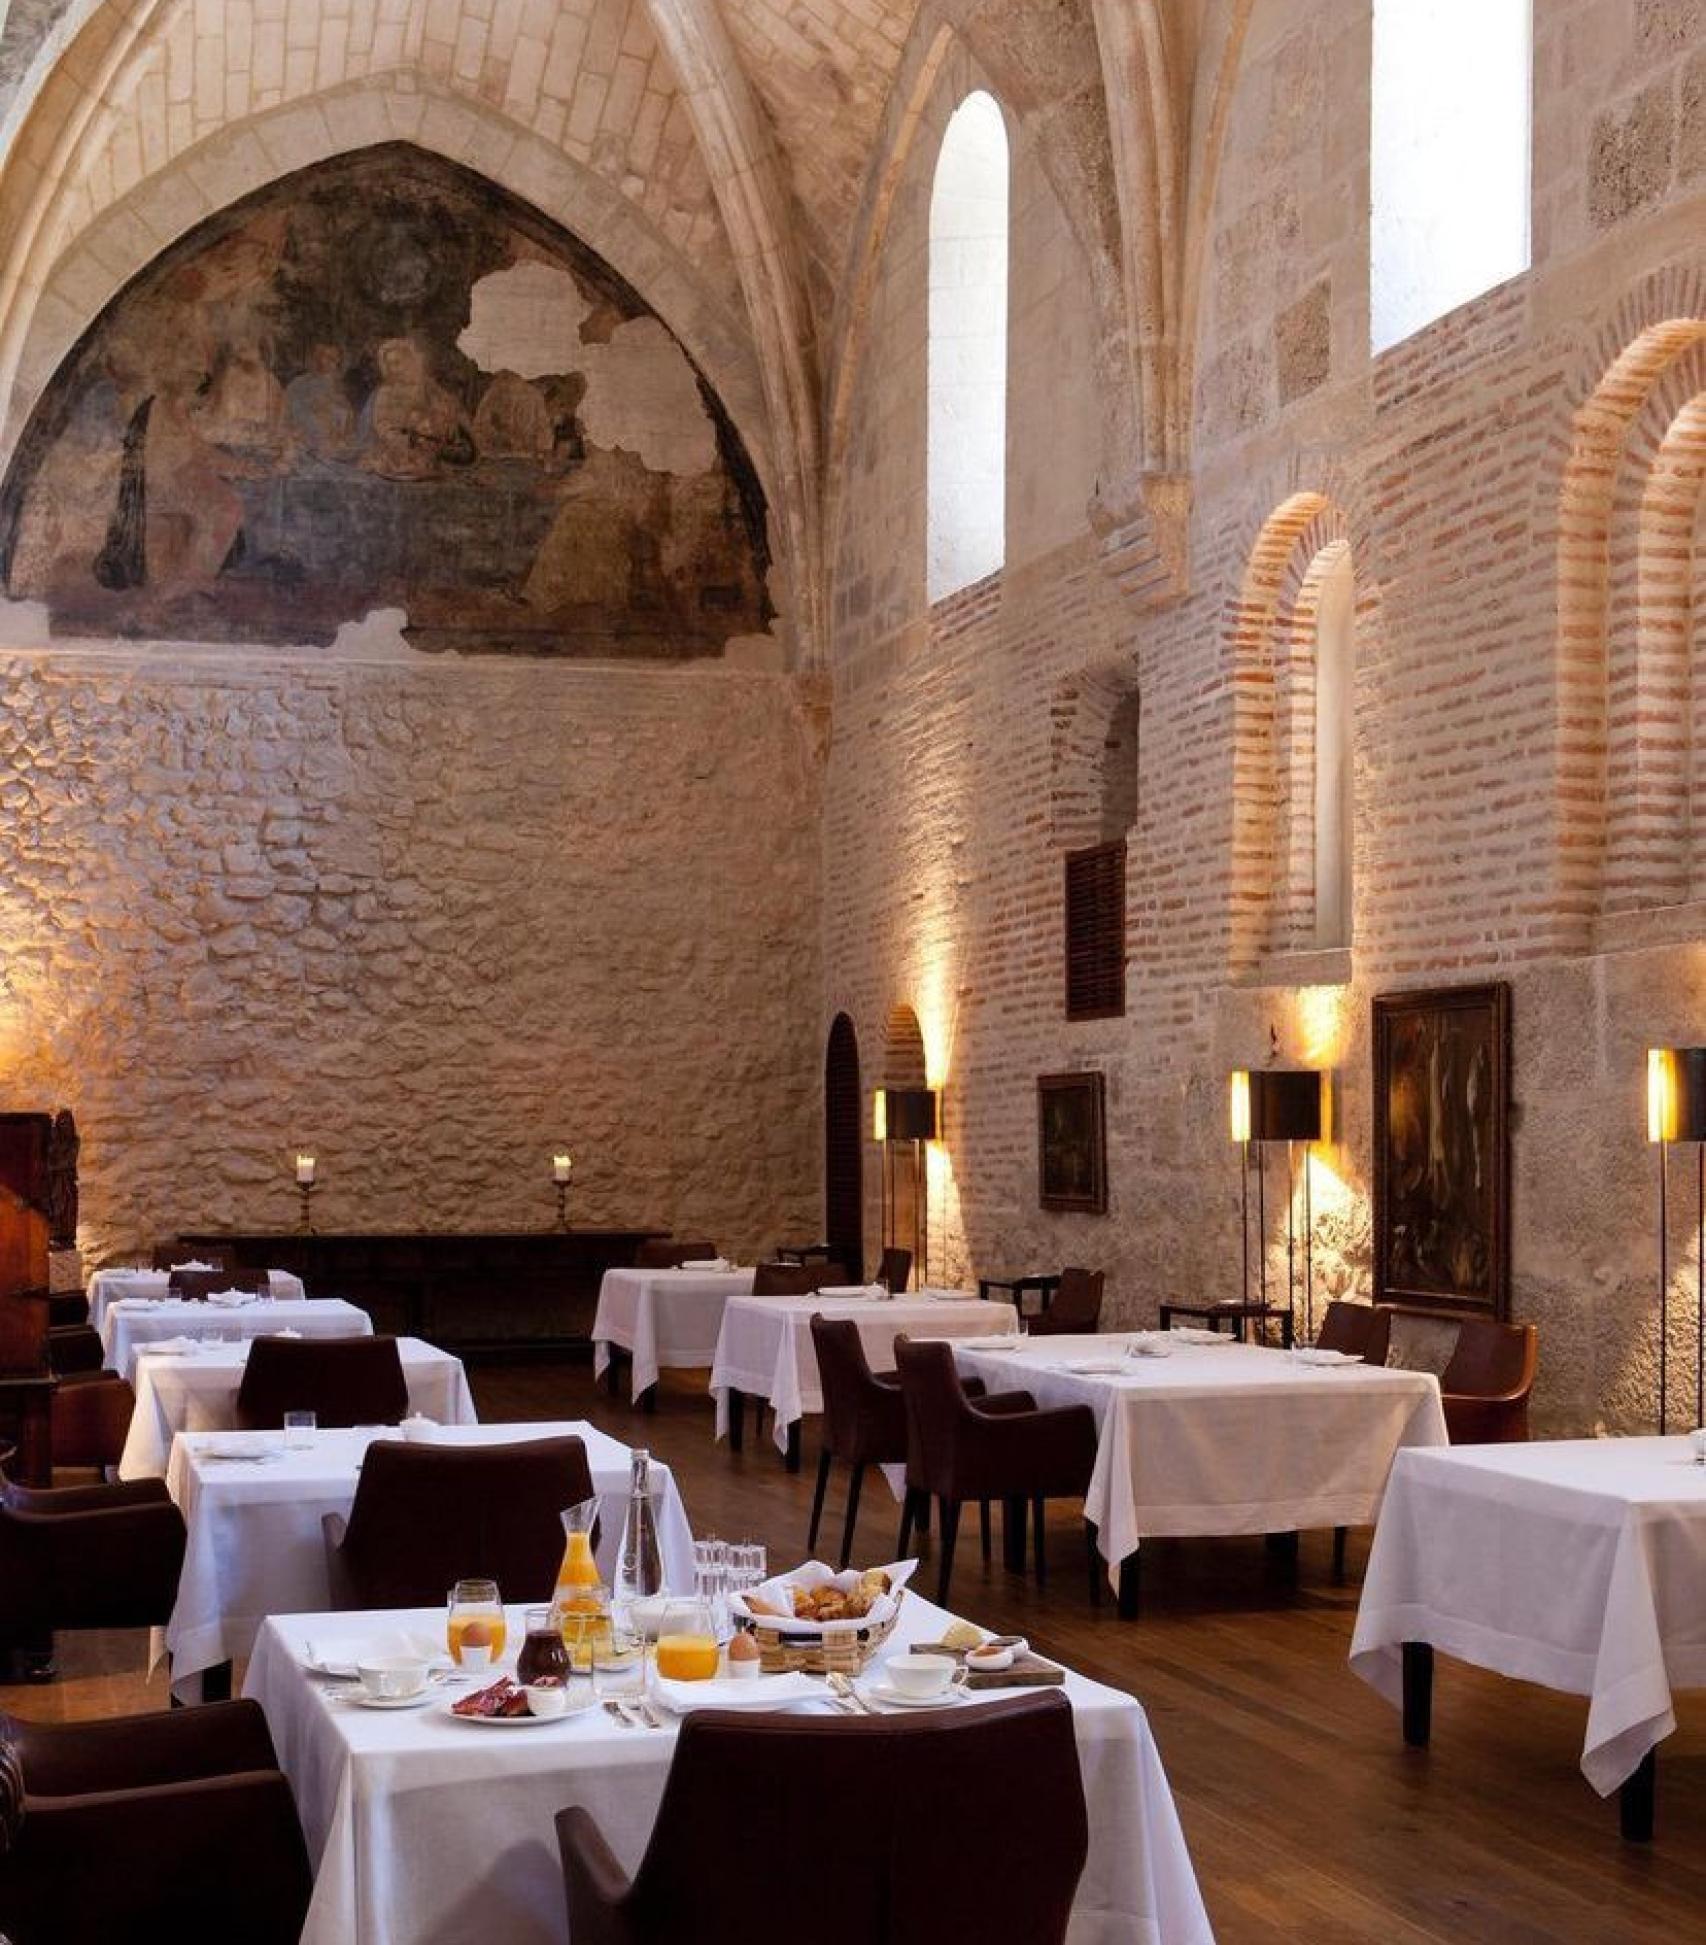 El impresionante comedor con paredes y bóvedas de piedra